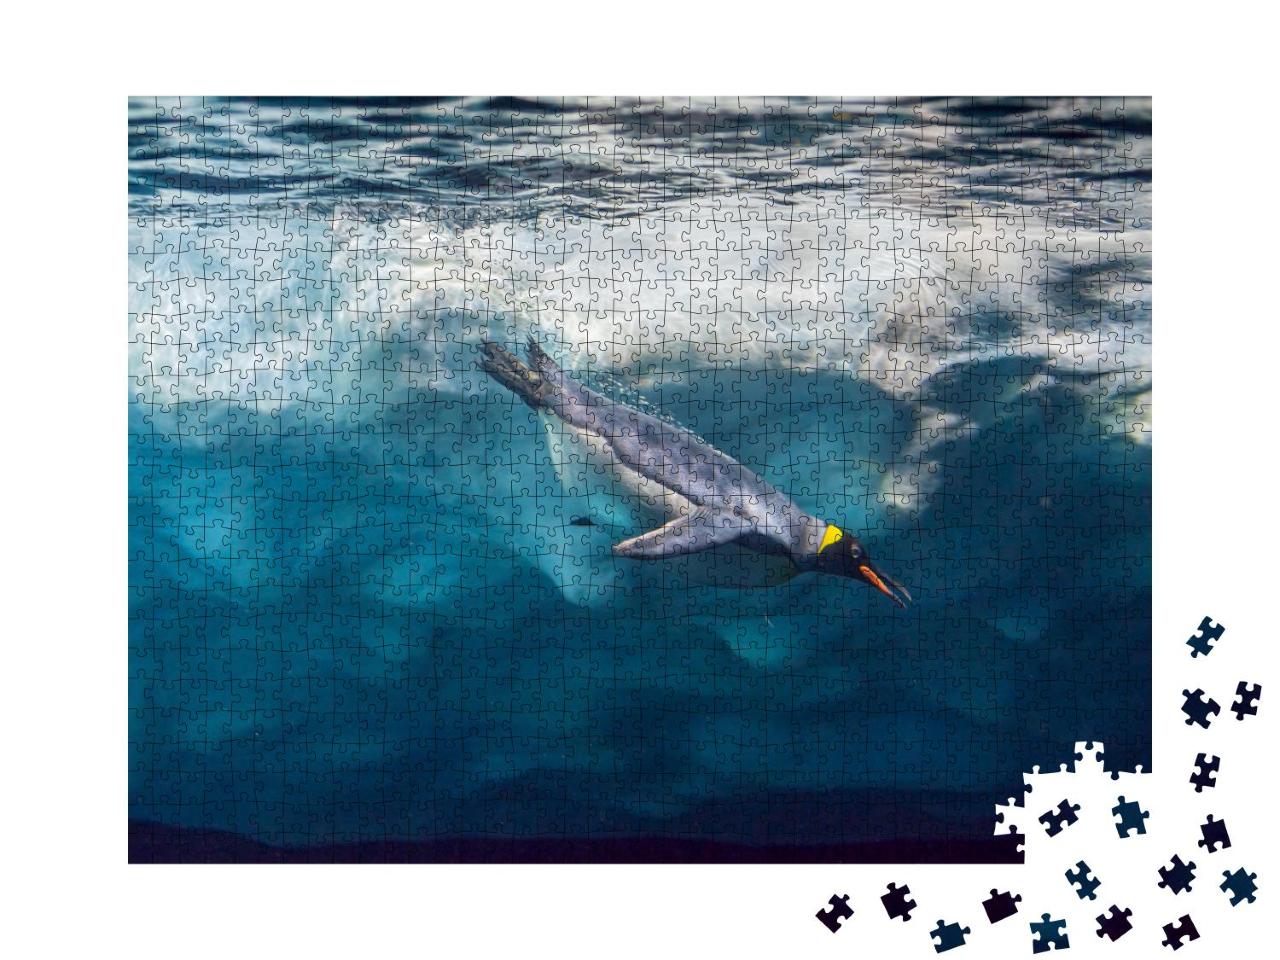 Puzzle 1000 Teile „Pinguin taucht unter dem Eis, Unterwasserfoto“